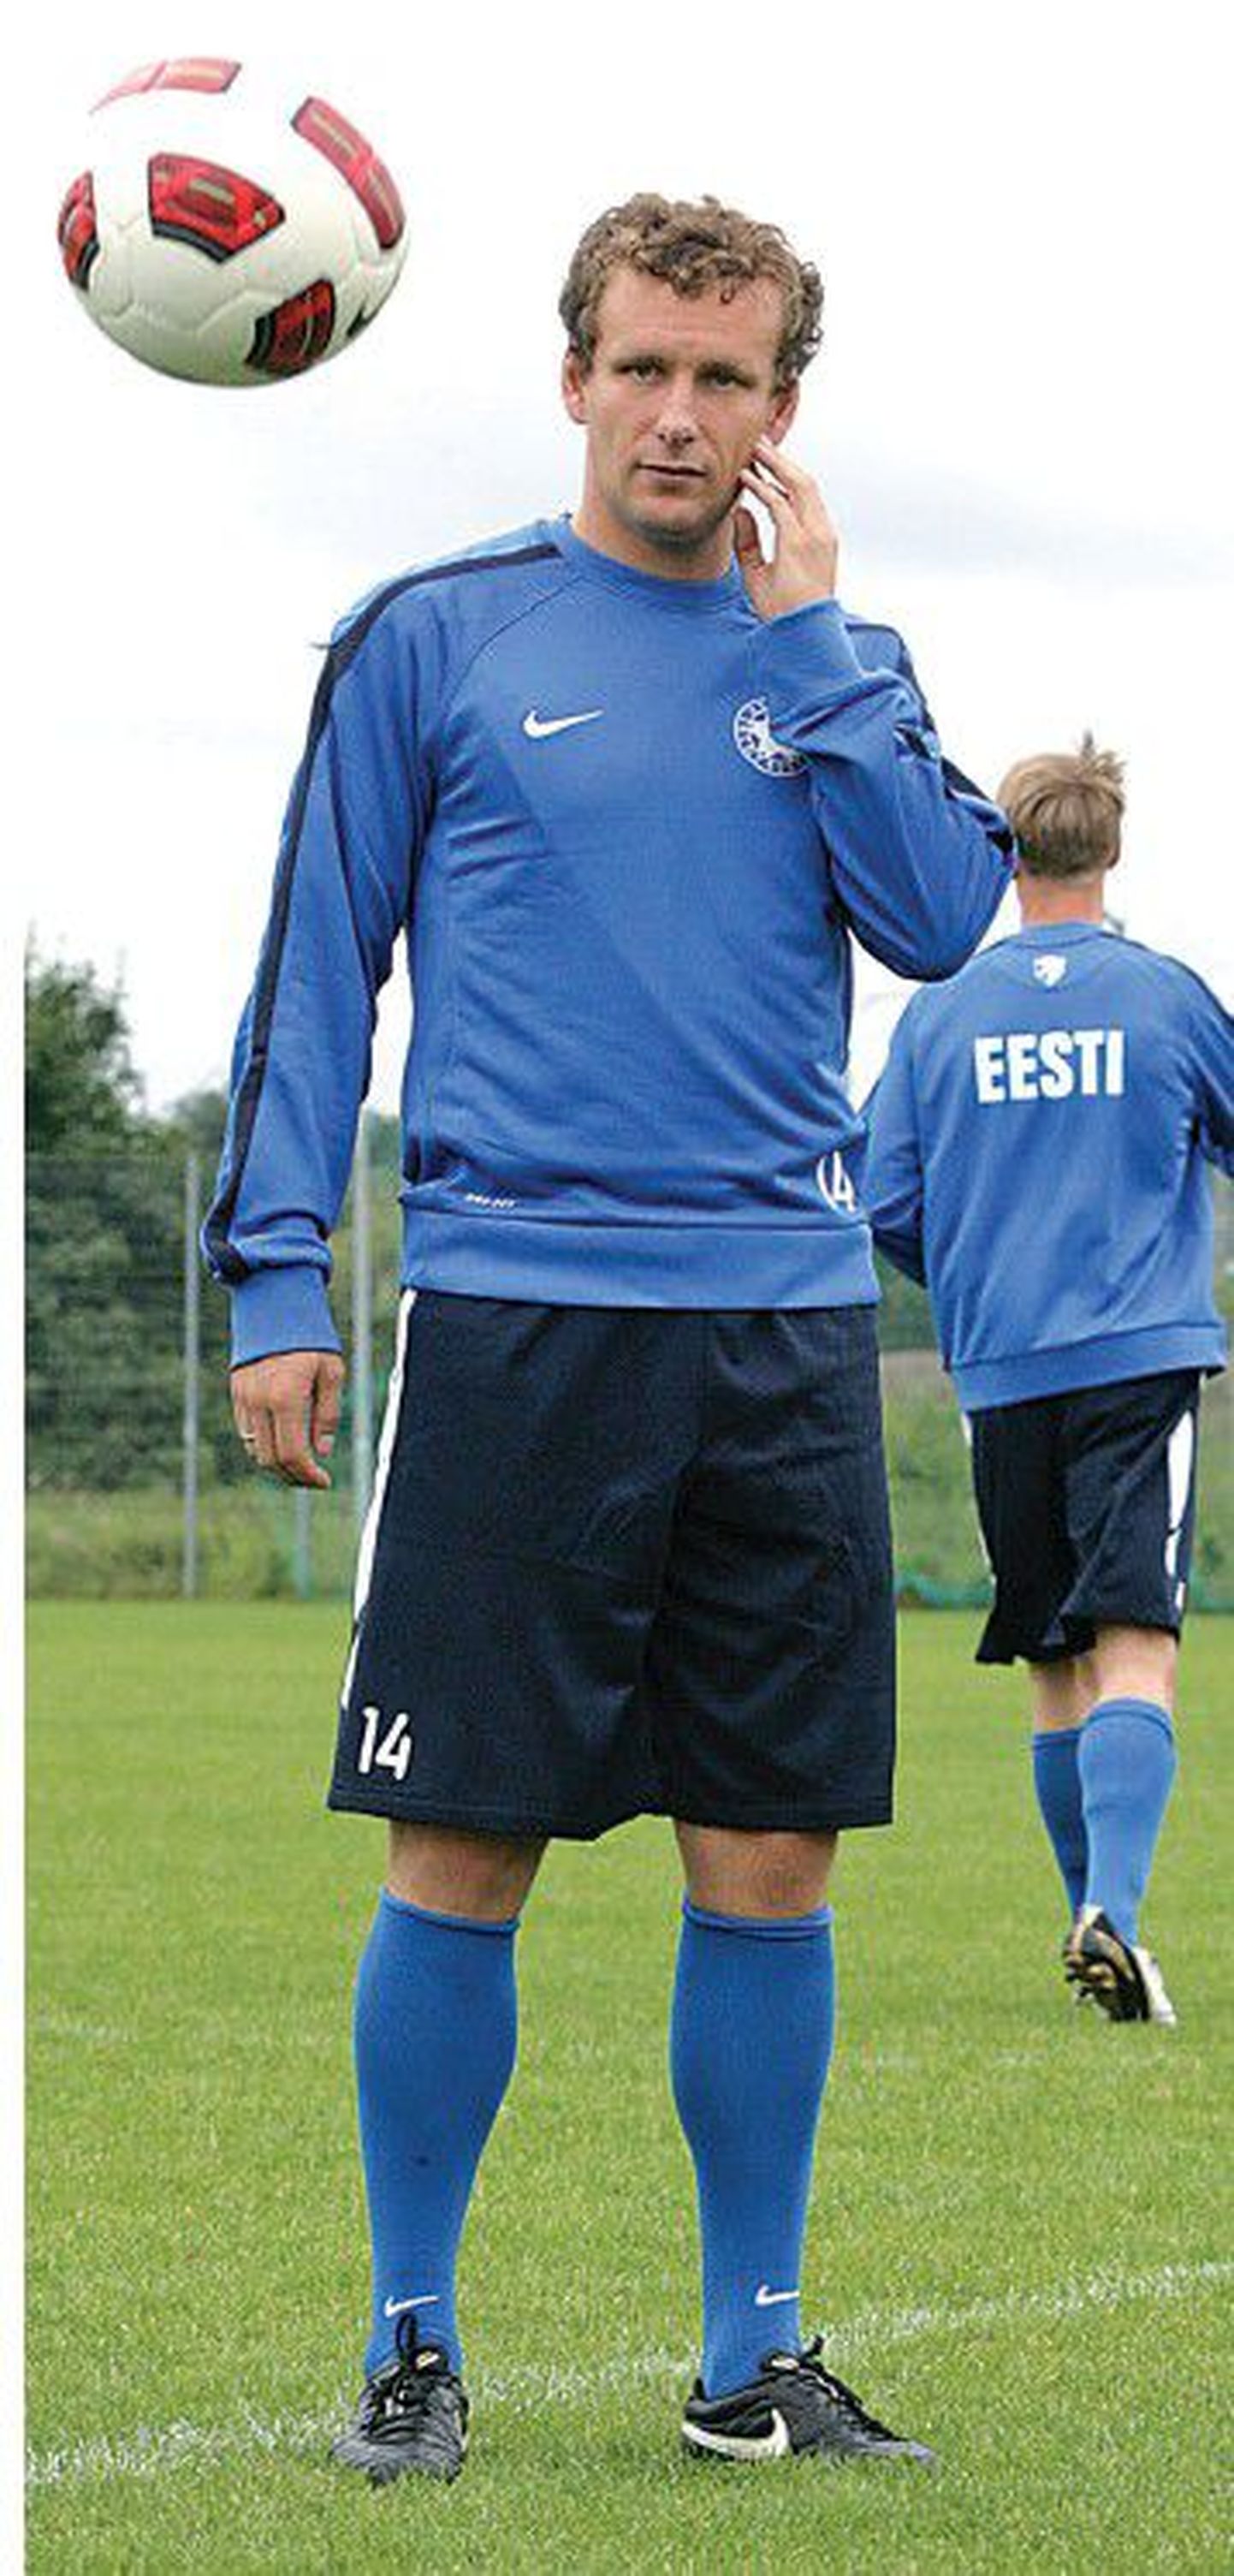 Футболист сборной Эстонии Константин Васильев отличается сильным ударом с дальних дистанций.